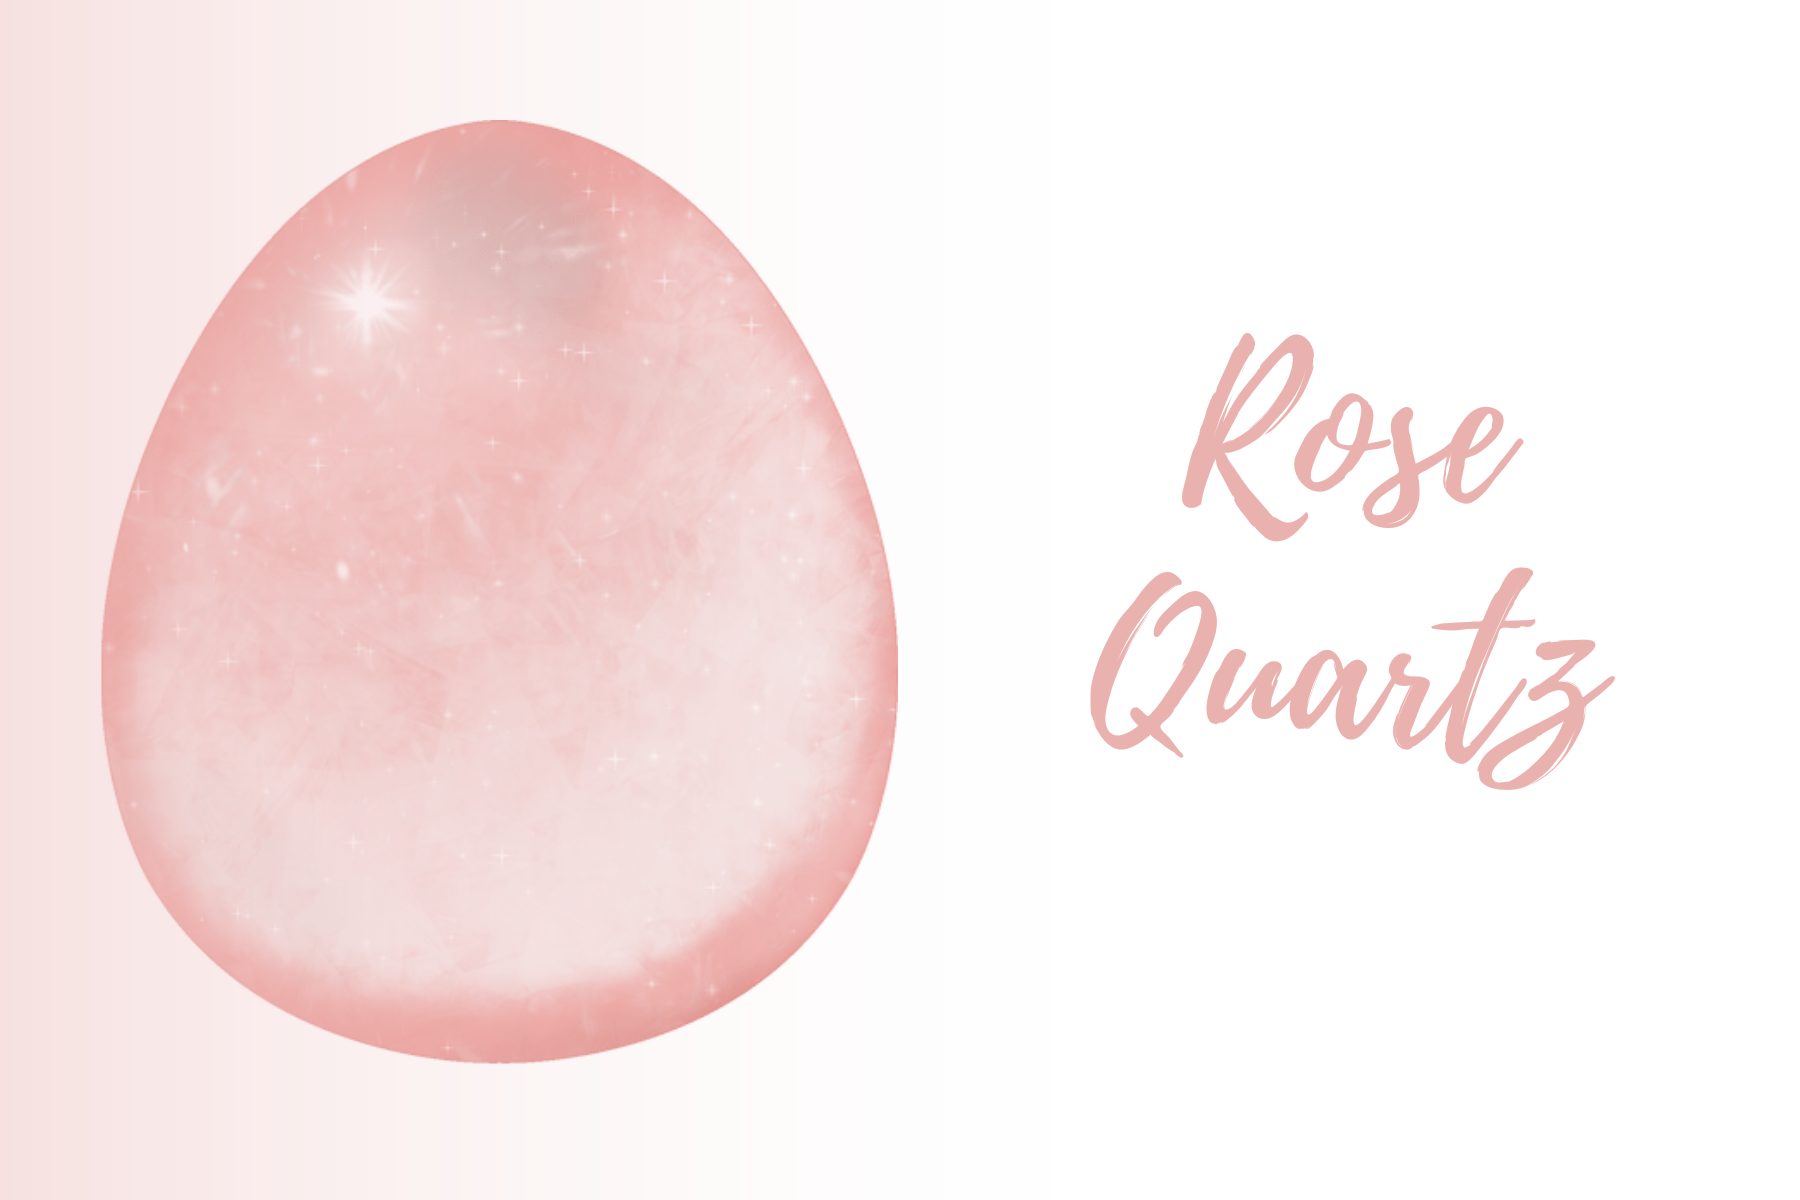 An egg-shaped rose quartz